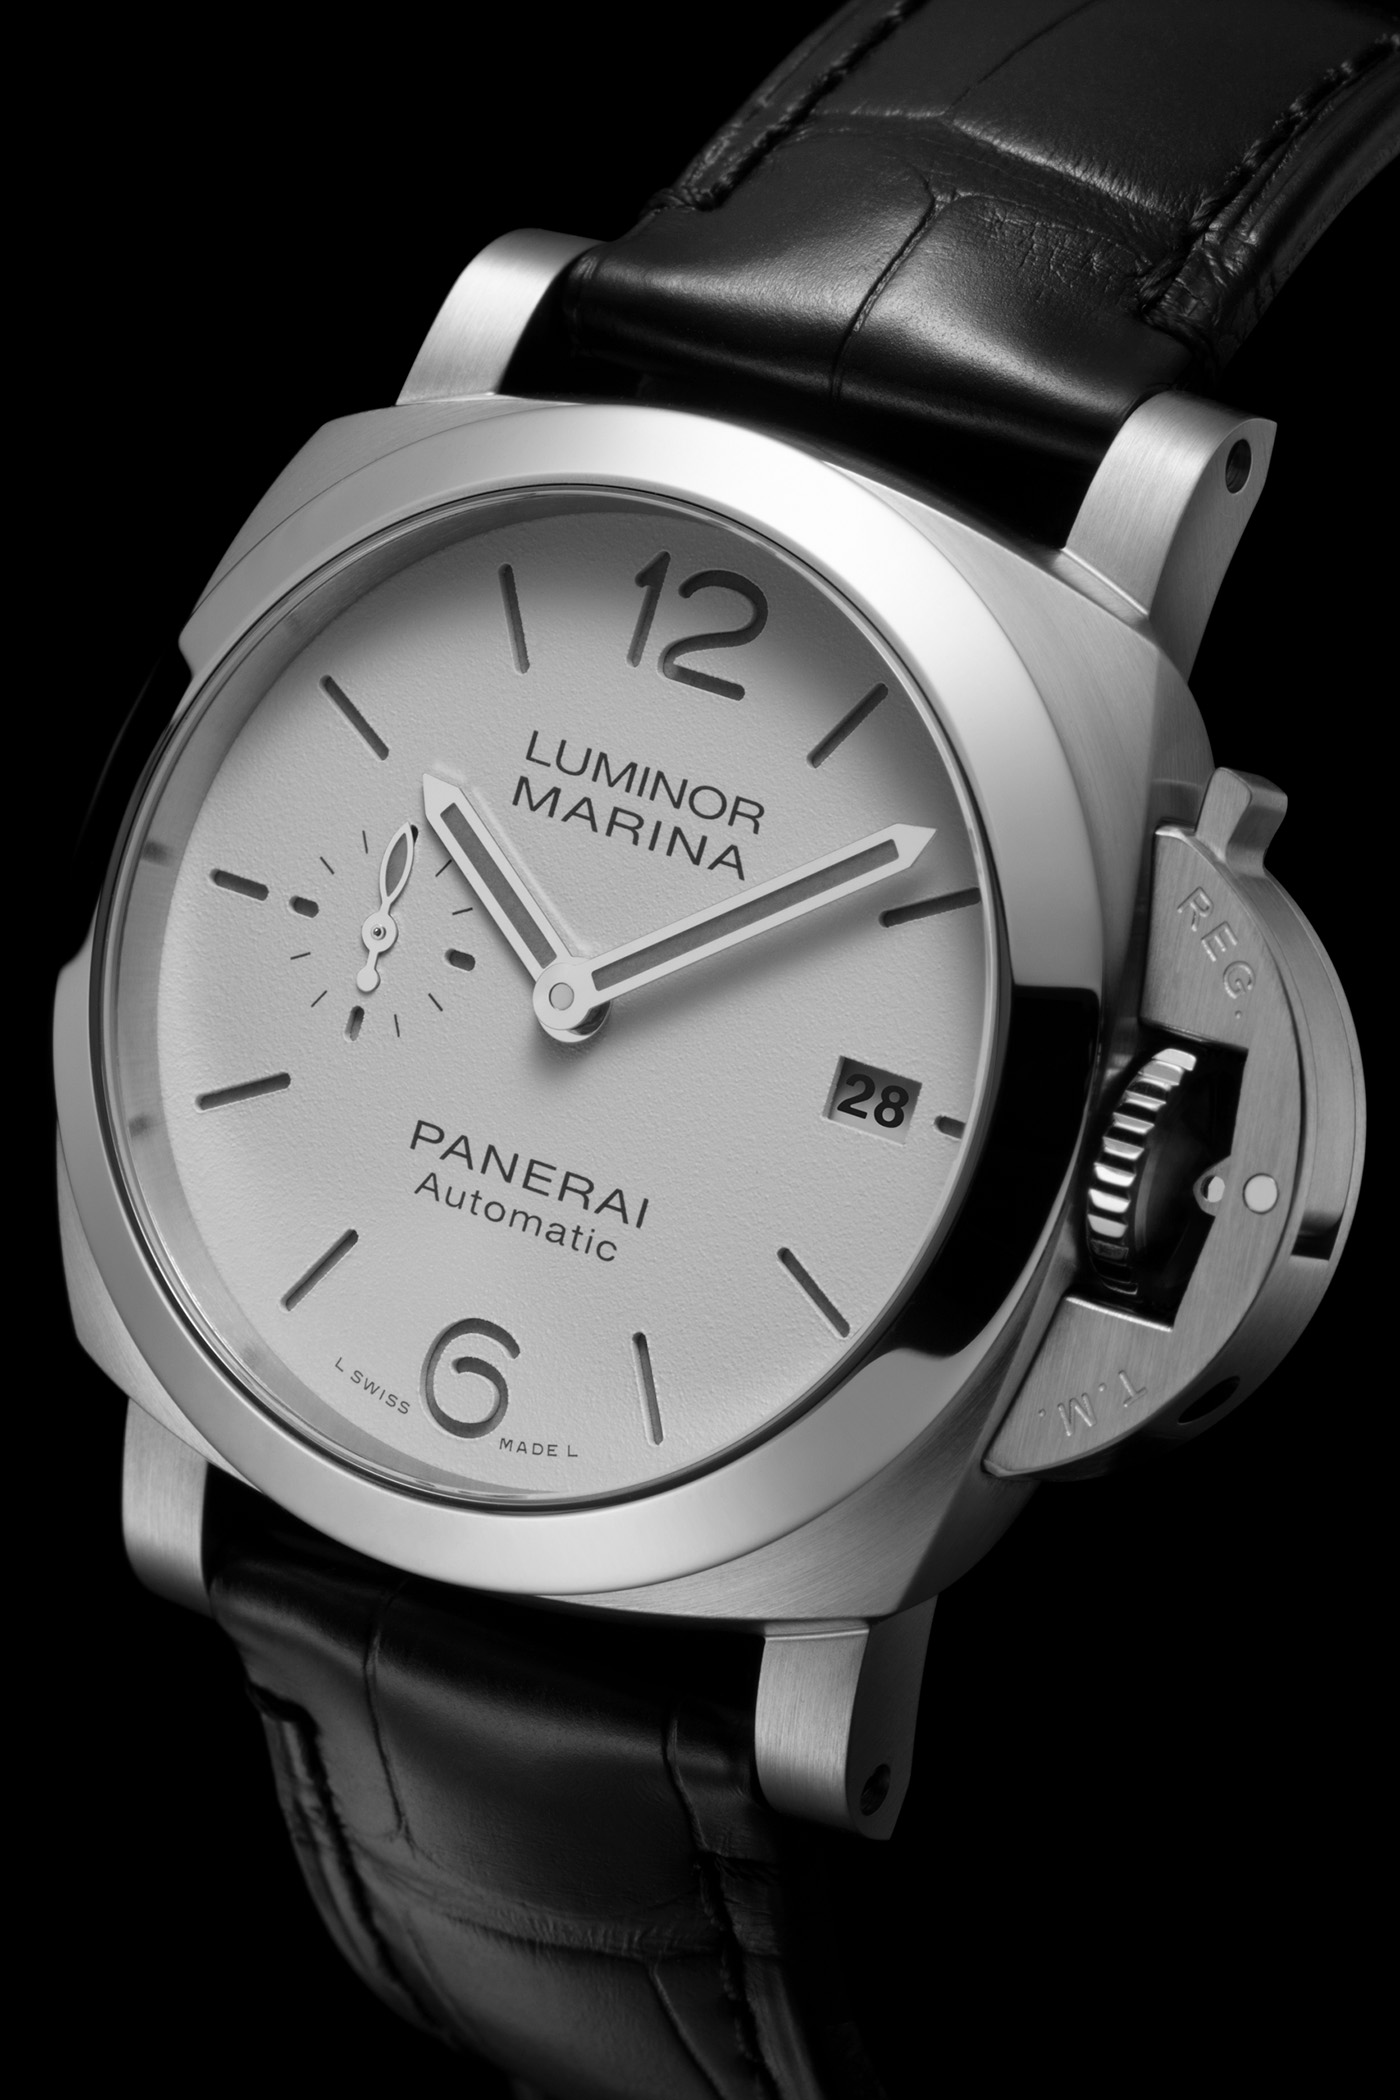 Panerai представляет коллекцию часов Luminor Marina Quaranta